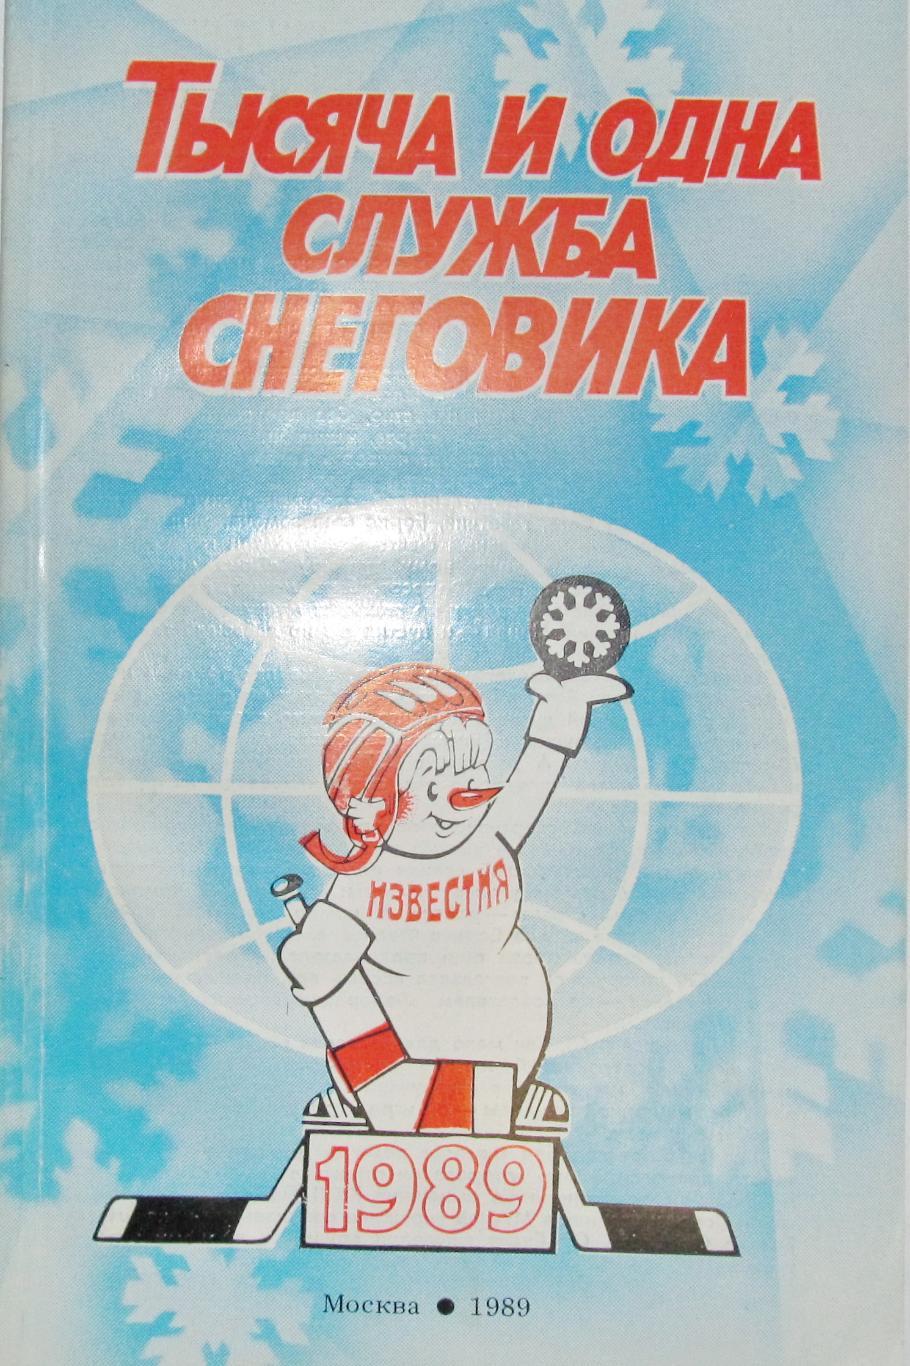 Тысяча и одна служба снеговика. Приз Известий. Москва, 1989